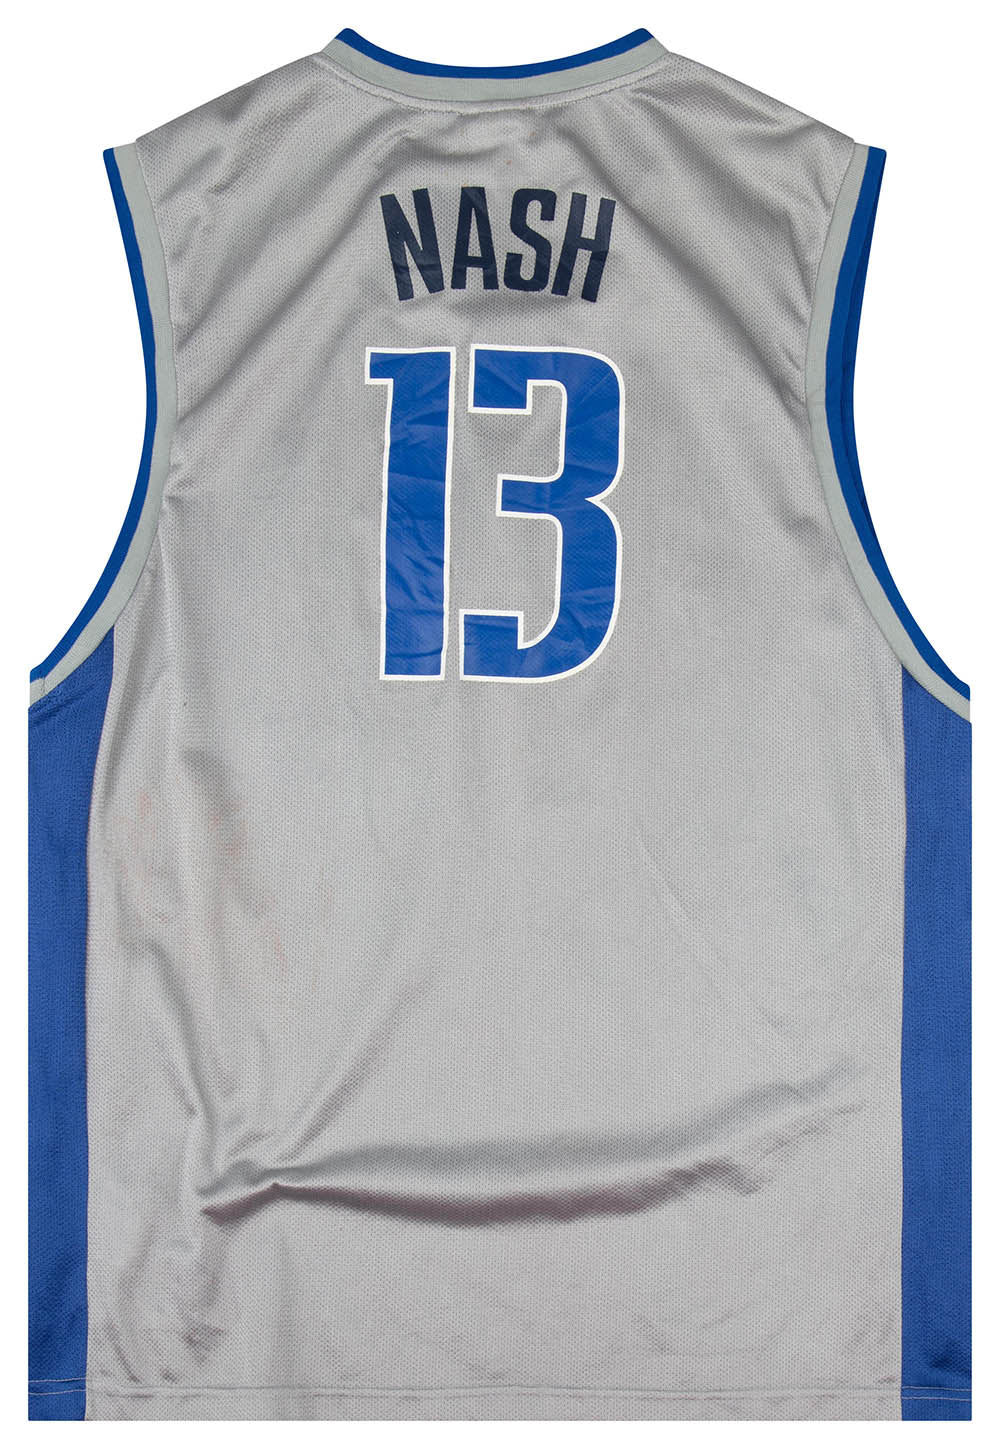 Vintage Reebok #13 Nash 2006 Houston NBA West All Star Jersey XL +2